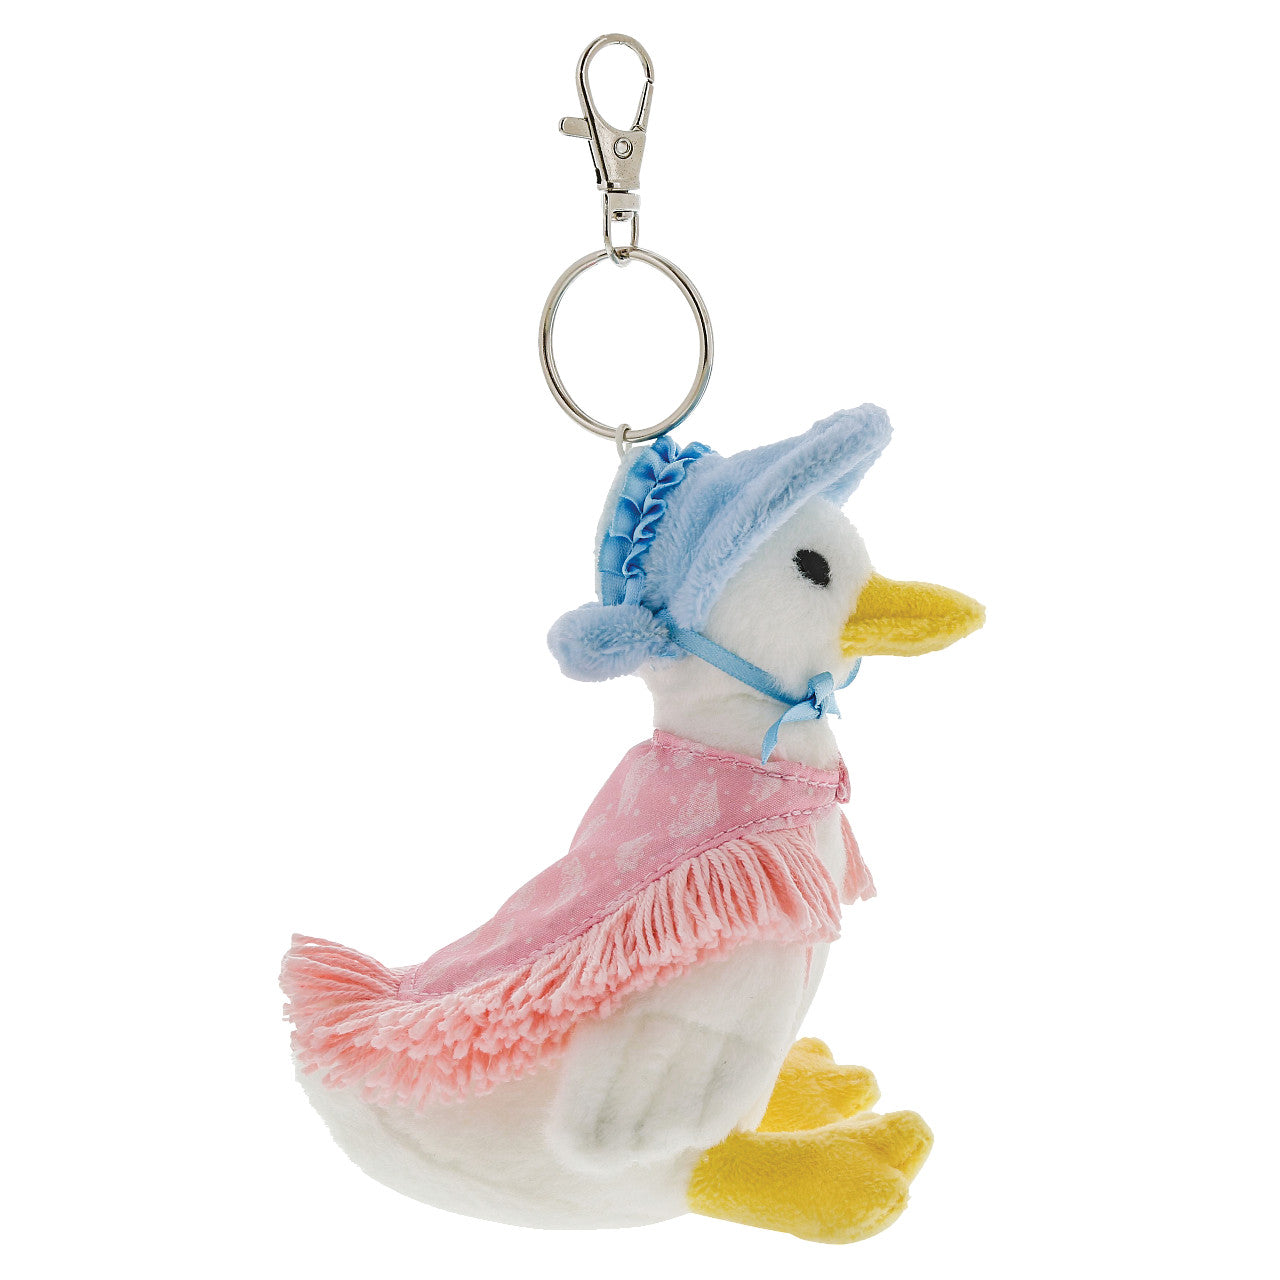 Jemima Puddle-Duck Plush Keyring 